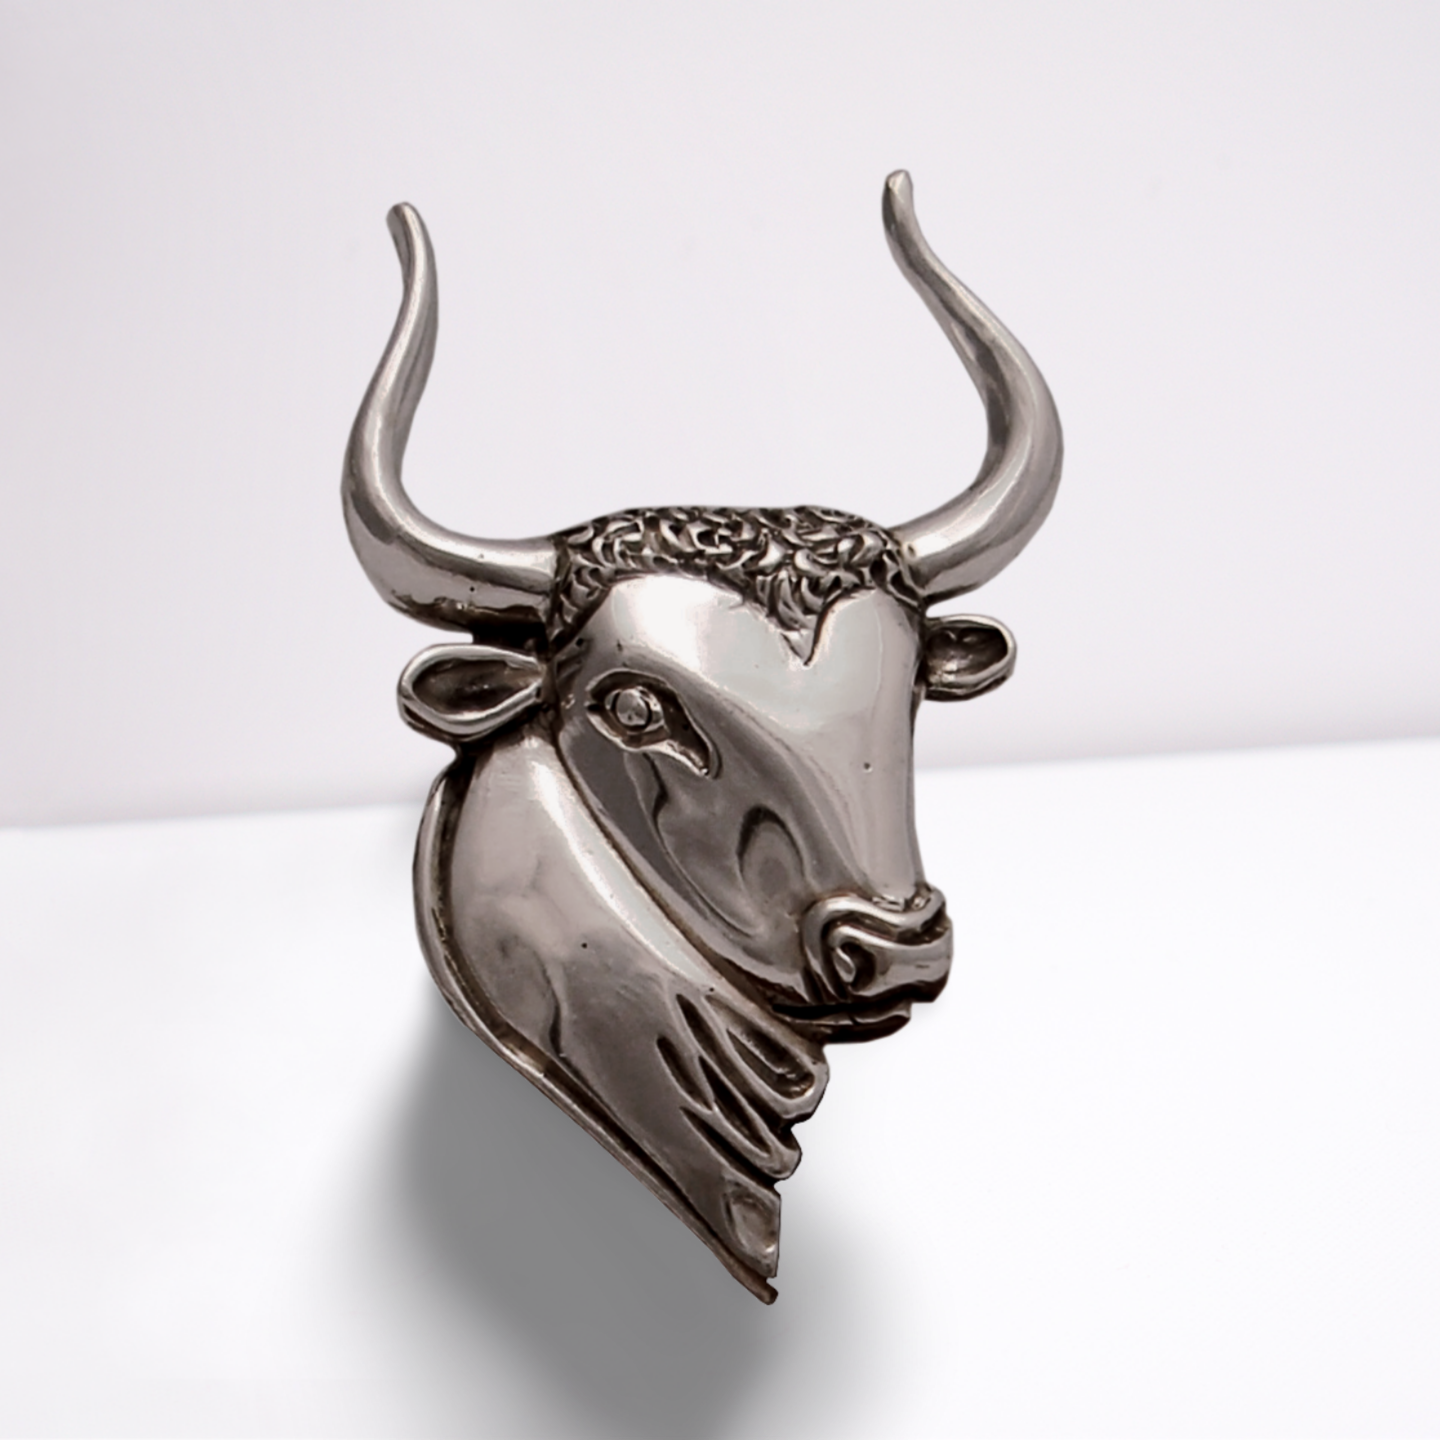 Minoan Head of Taurus Brooch in Sterling Silver (K-70)